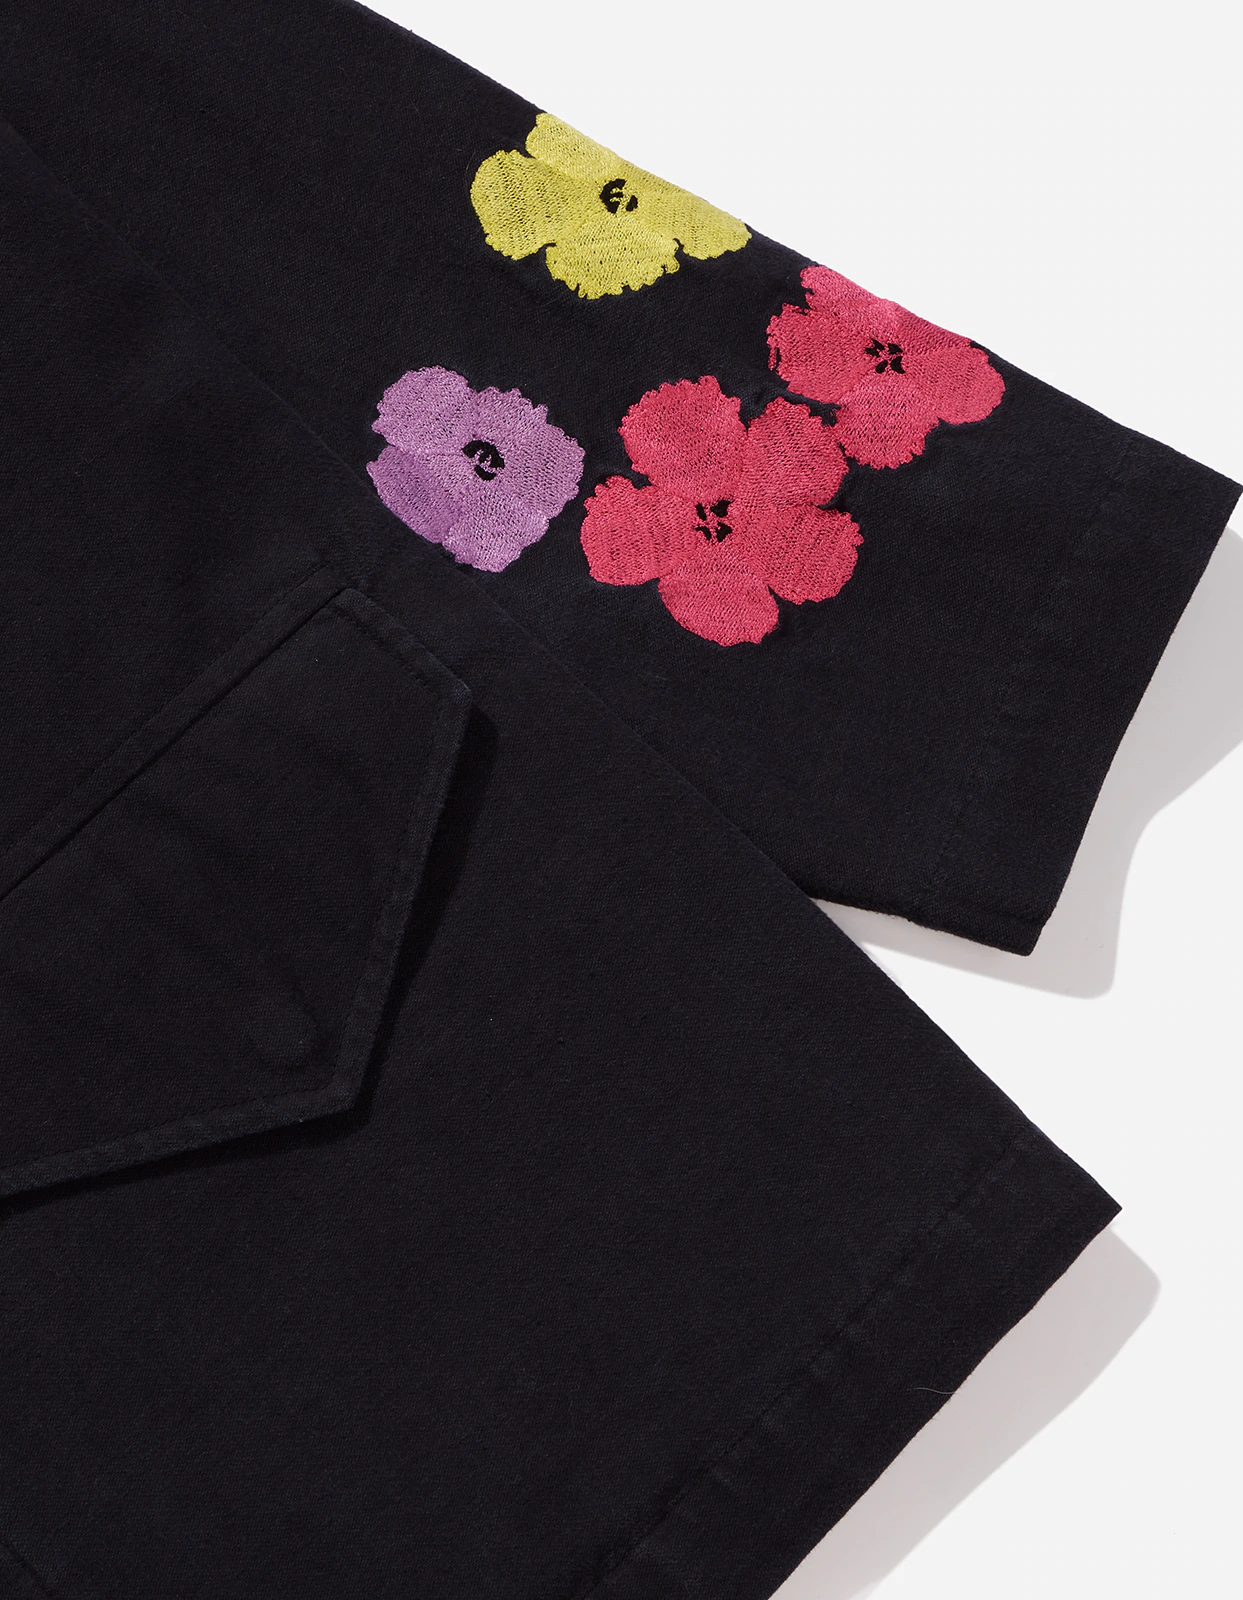 ss22_3675-warhol-flowers-field-jacket_black-blk-108ff_30_2880x